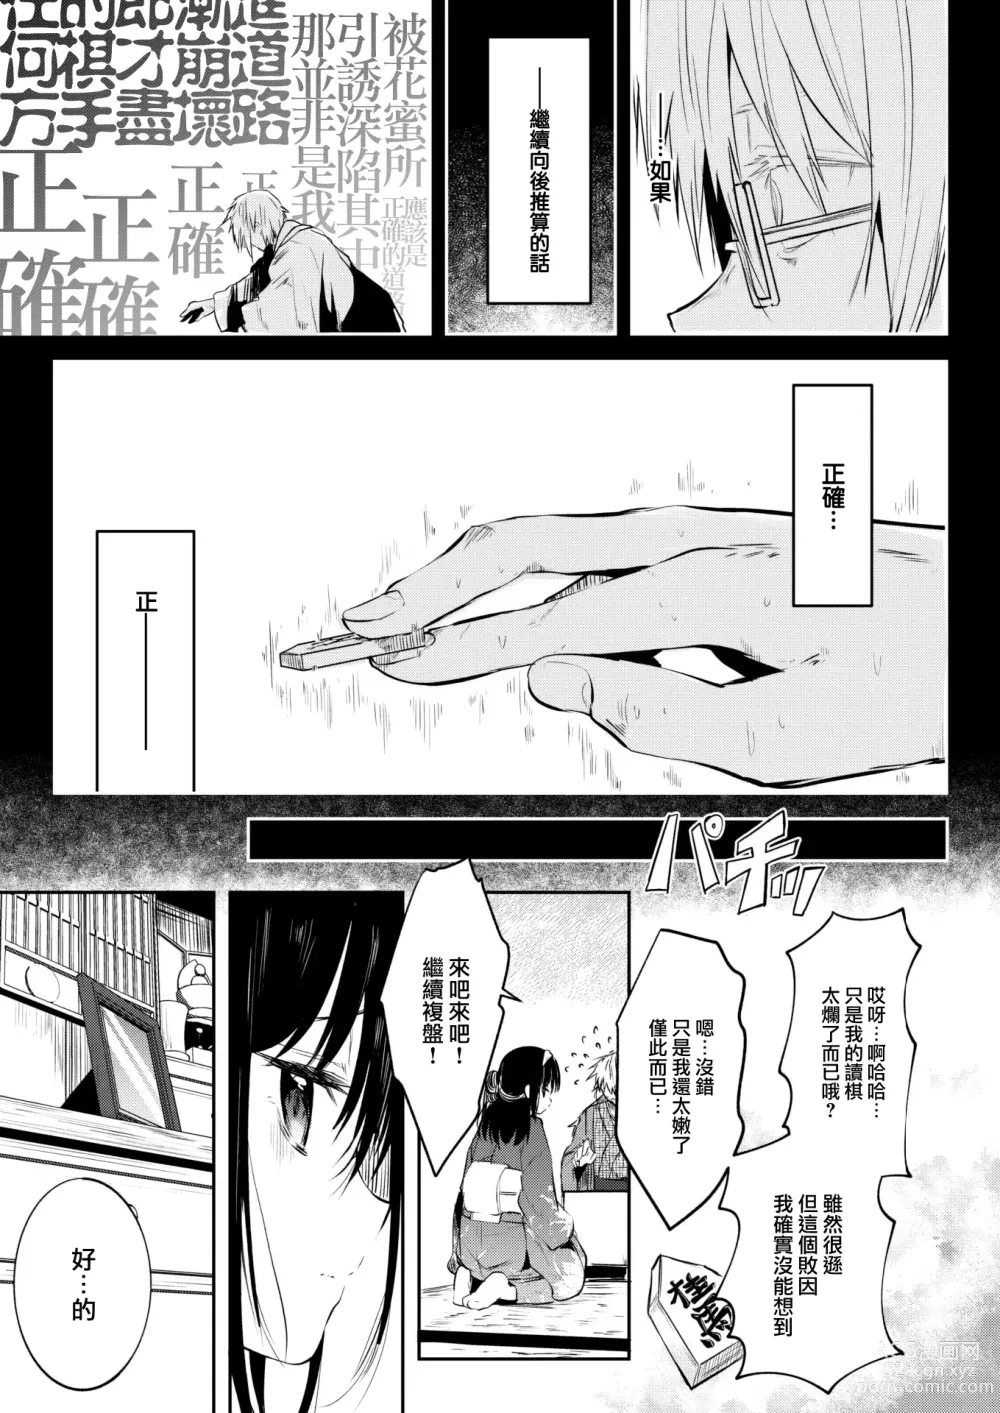 Page 6 of manga Tokaku Ukiyowa Mamanaranu.